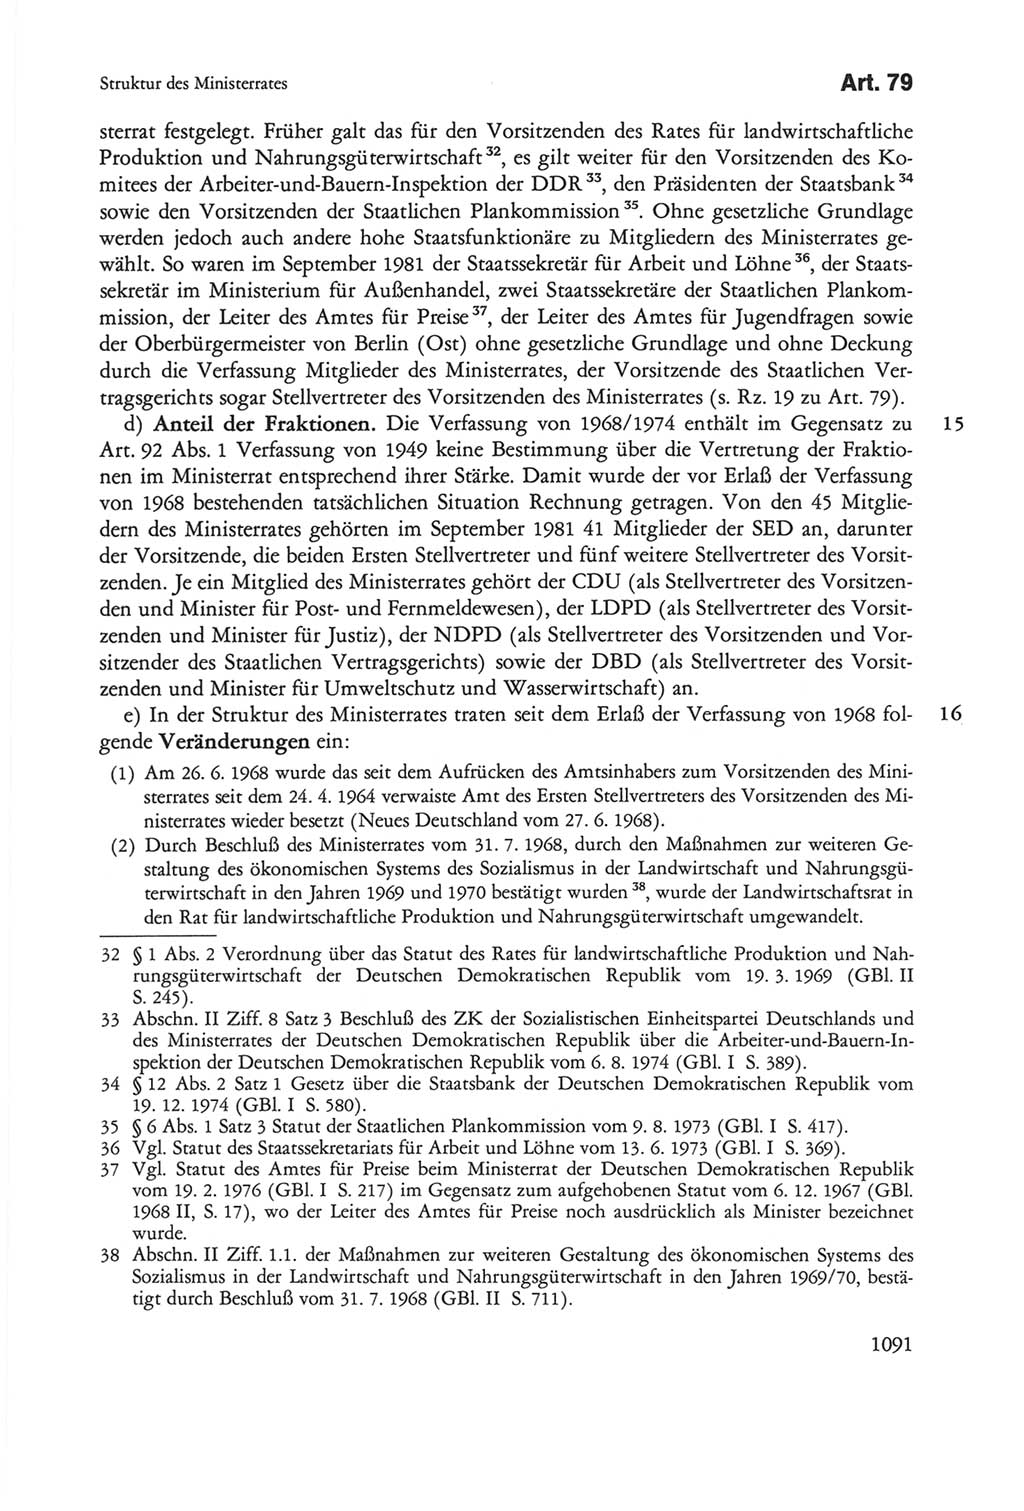 Die sozialistische Verfassung der Deutschen Demokratischen Republik (DDR), Kommentar mit einem Nachtrag 1997, Seite 1091 (Soz. Verf. DDR Komm. Nachtr. 1997, S. 1091)